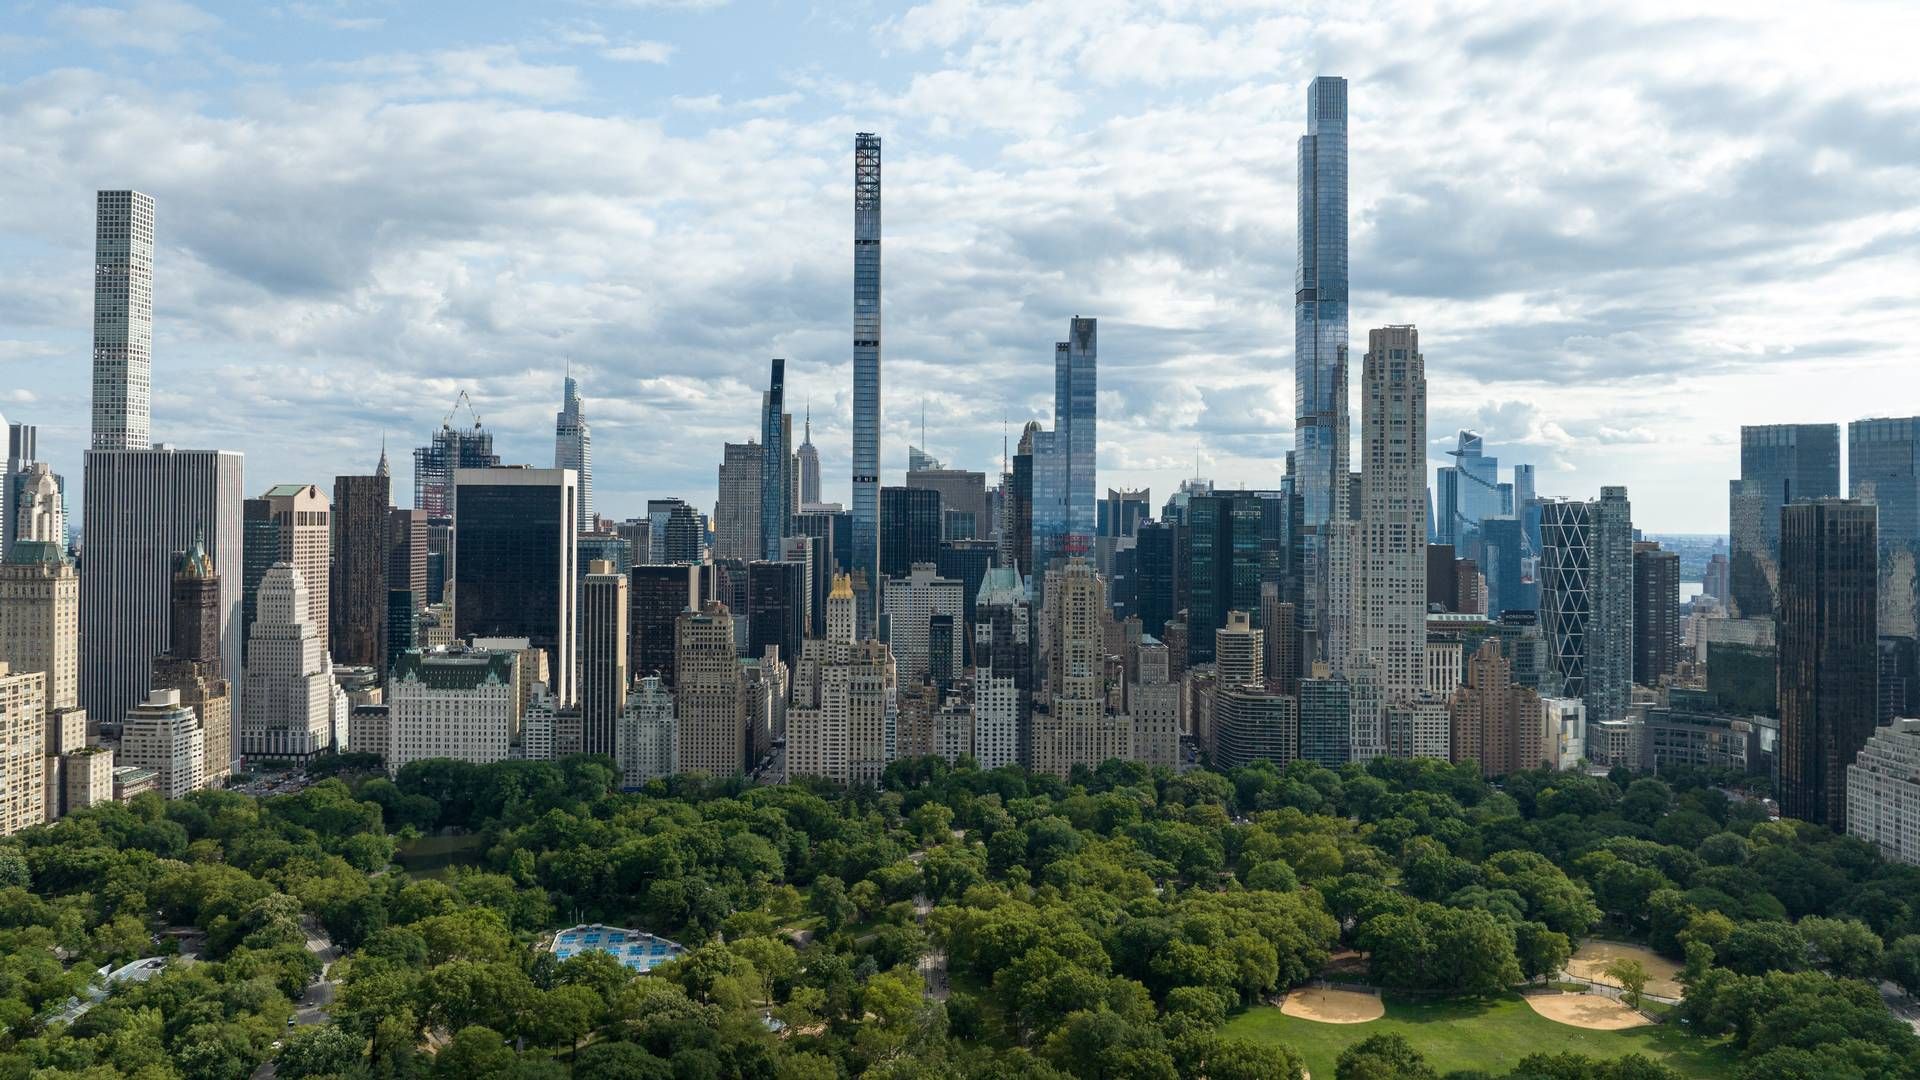 Büros, wohin das Auge reicht - die New Yorker Skyline. | Foto: picture alliance / AA | Lokman Vural Elibol